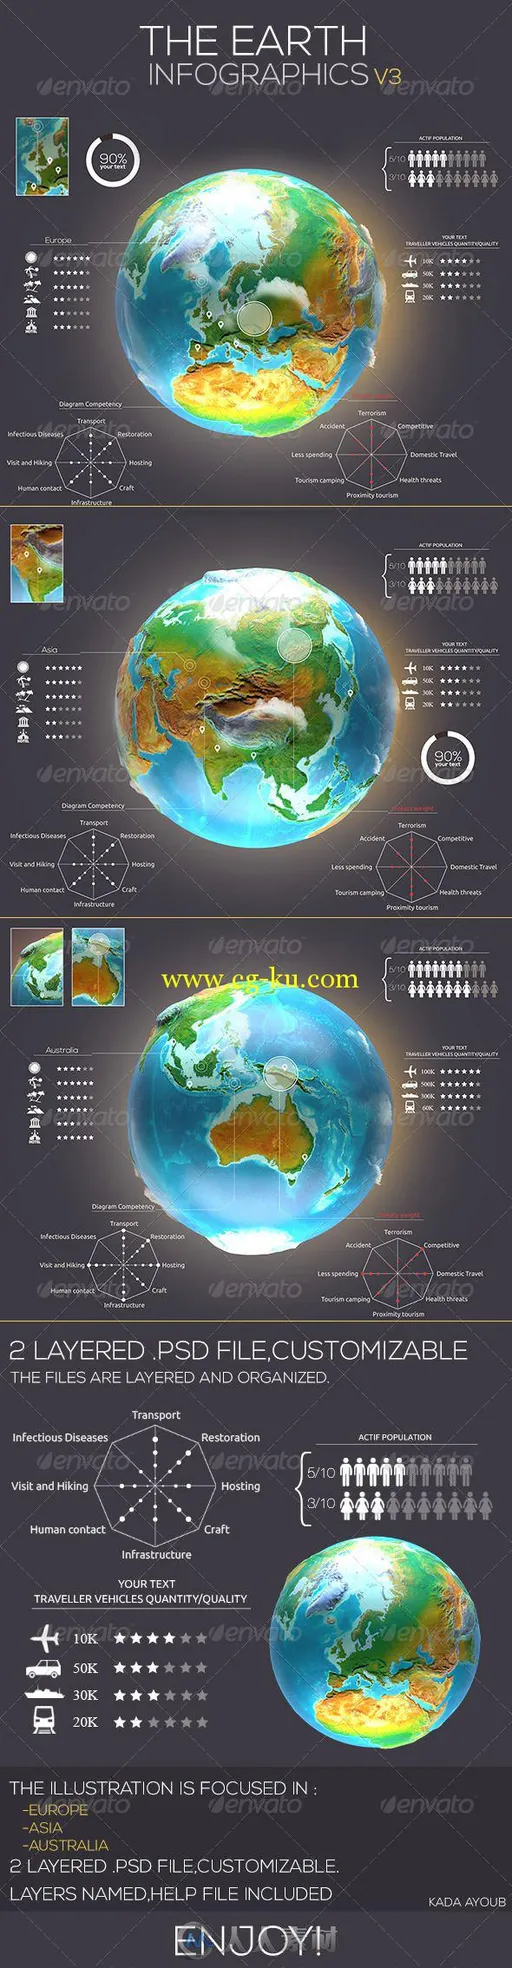 地球模型展示PSD模板Earth_Infographics_Travel_v3_7377069的图片2